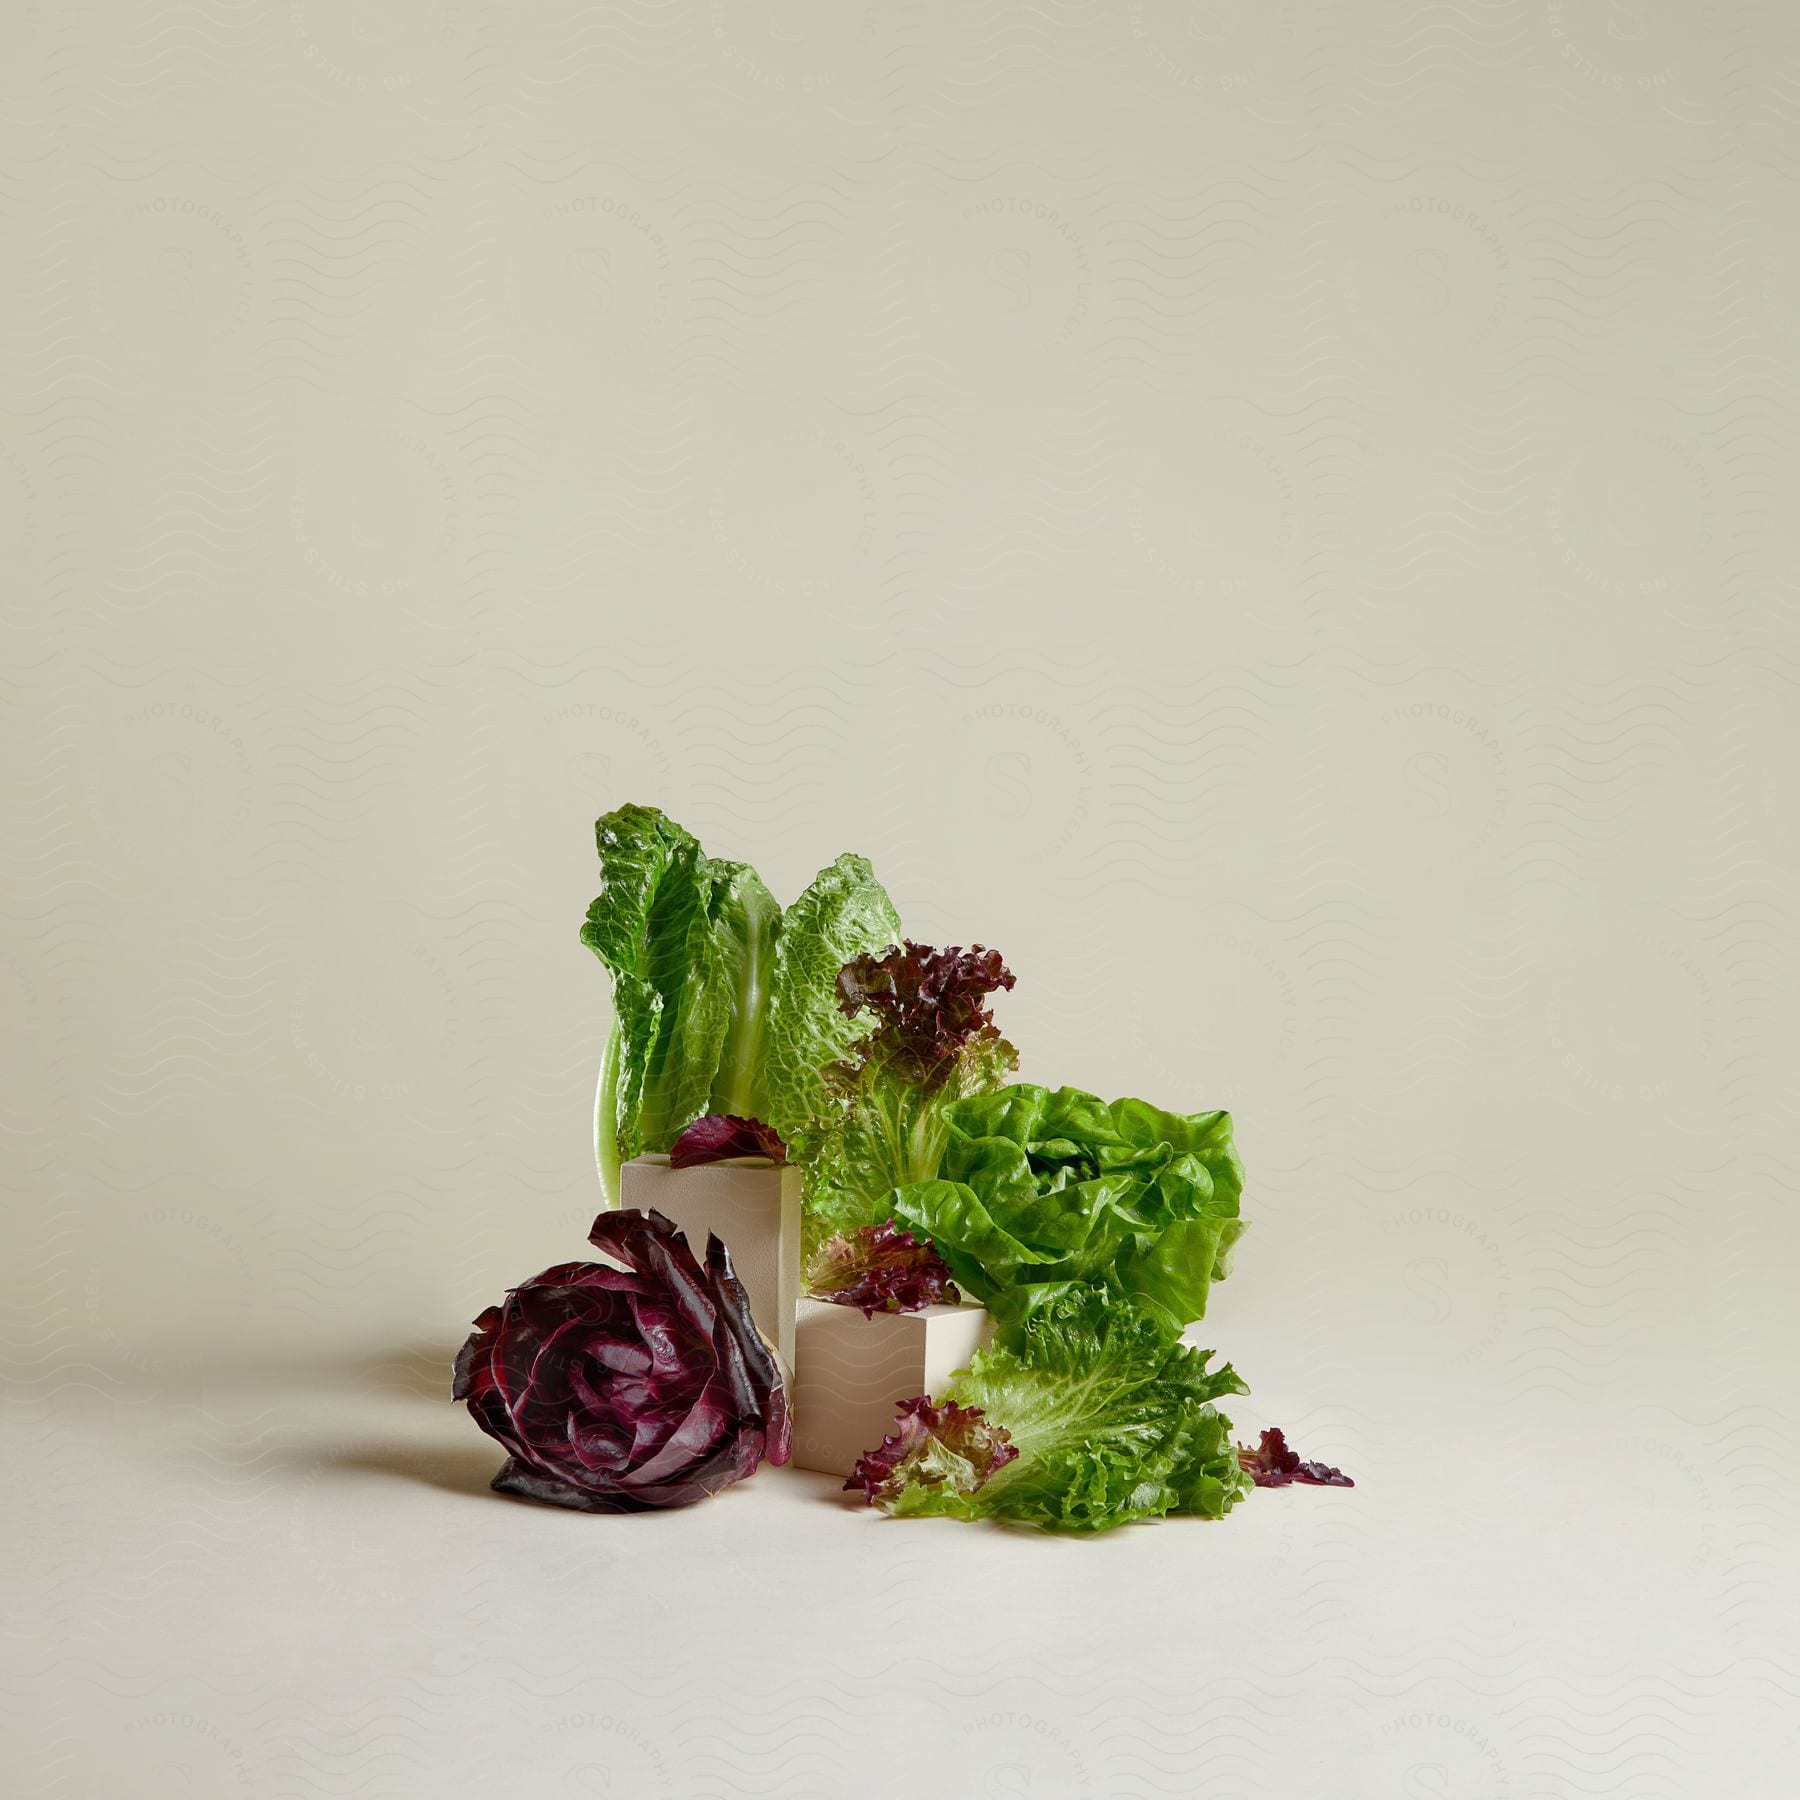 A lettuce broken apart.